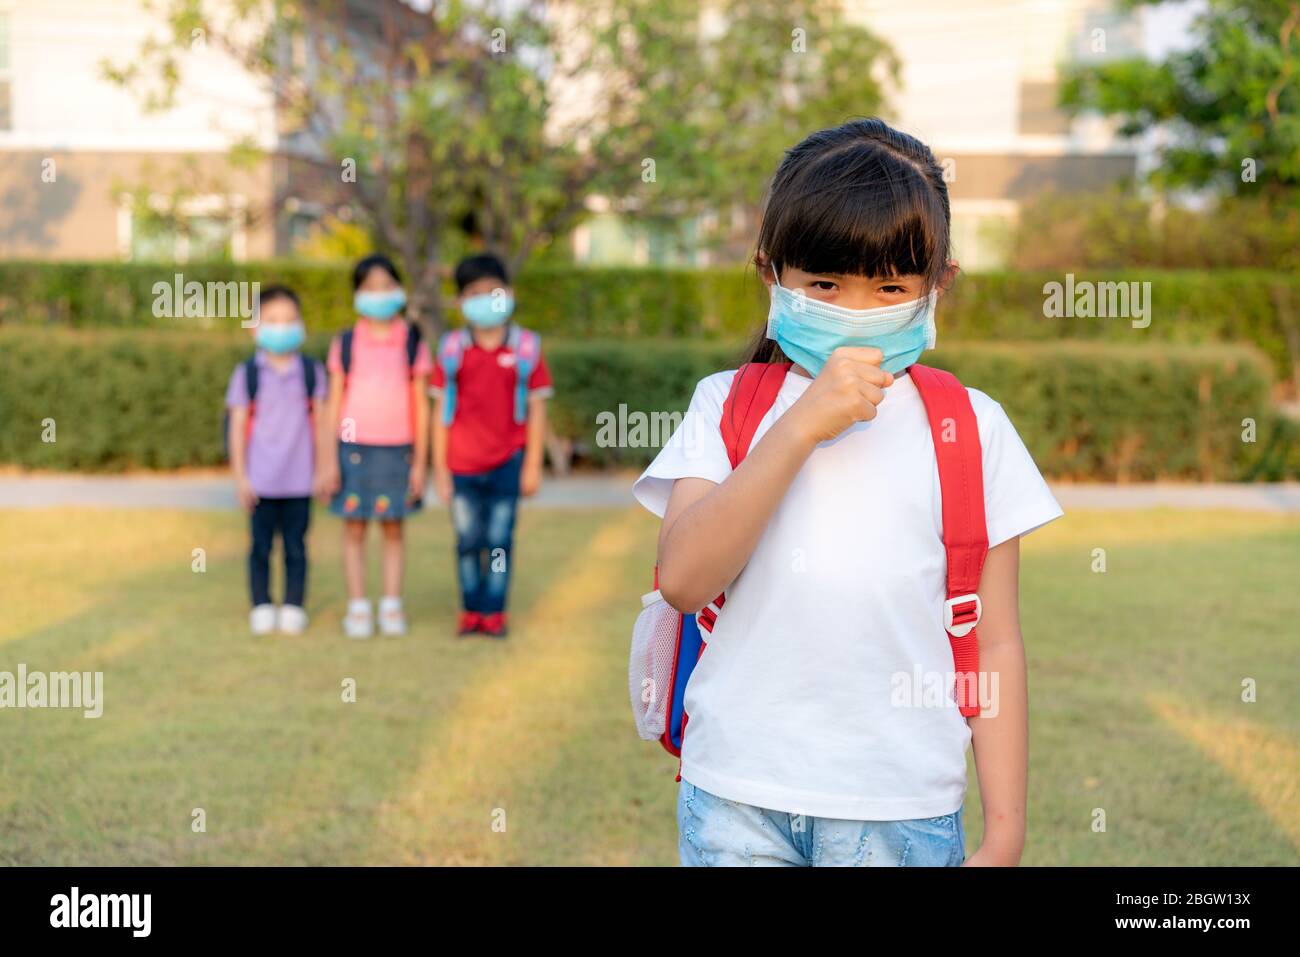 Asiatische Mädchen Vorschule Kind Student trägt gesunde Gesichtsmaske niesen mit Freunden im Hintergrund. WER empfiehlt mindestens 6 Füßlinge Abstand zwischen yo Stockfoto